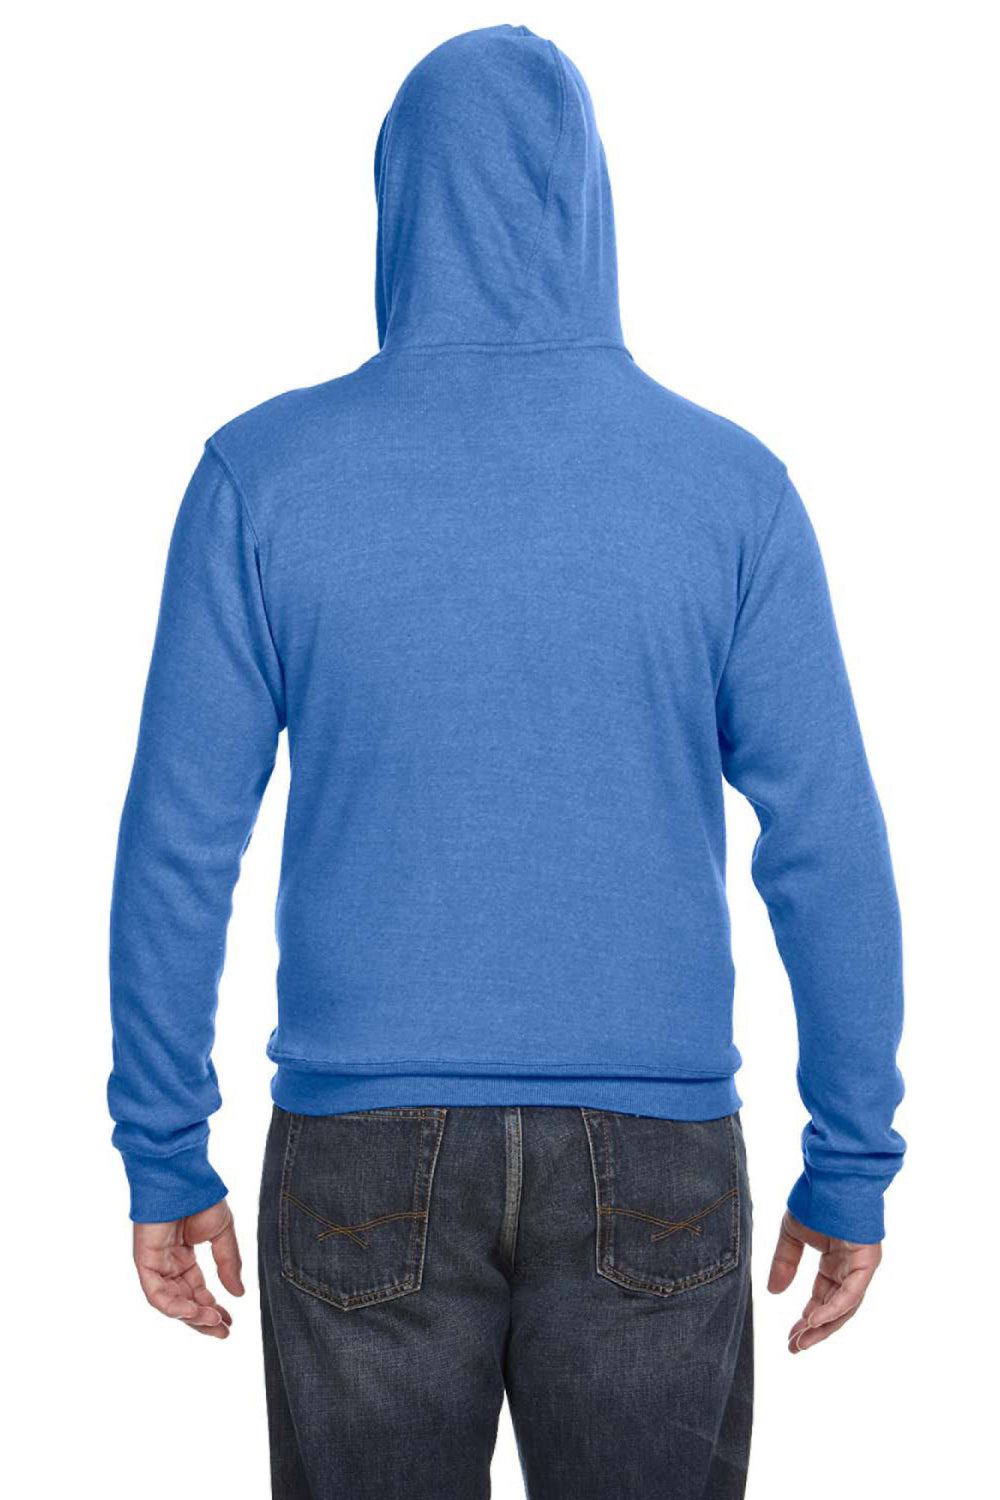 J America JA8871 Mens Fleece Hooded Sweatshirt Hoodie Royal Blue Back